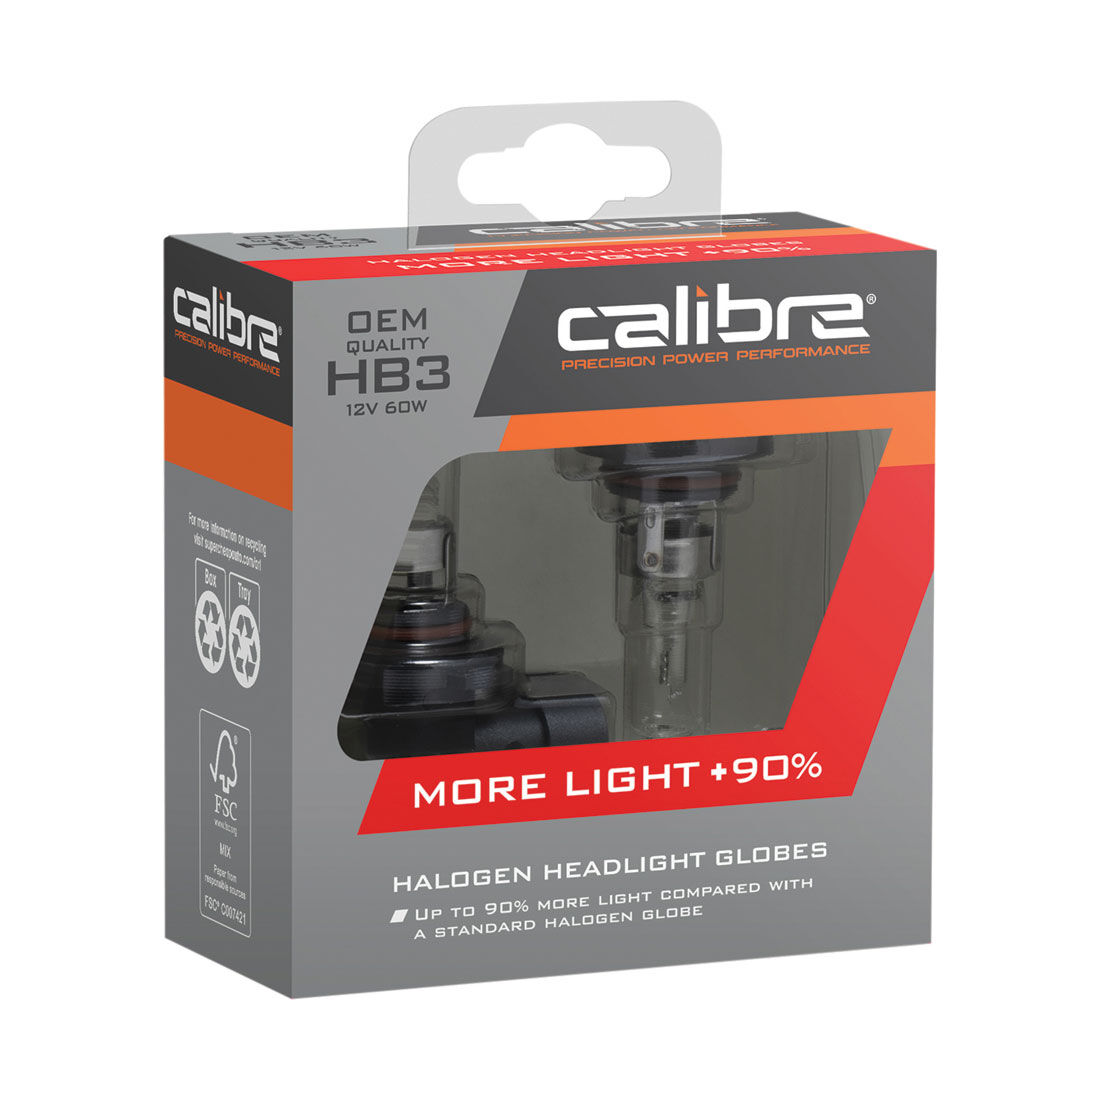 Calibre Plus 90 Headlight Globes - HB3, 12V 60W, CA90HB3, , scaau_hi-res